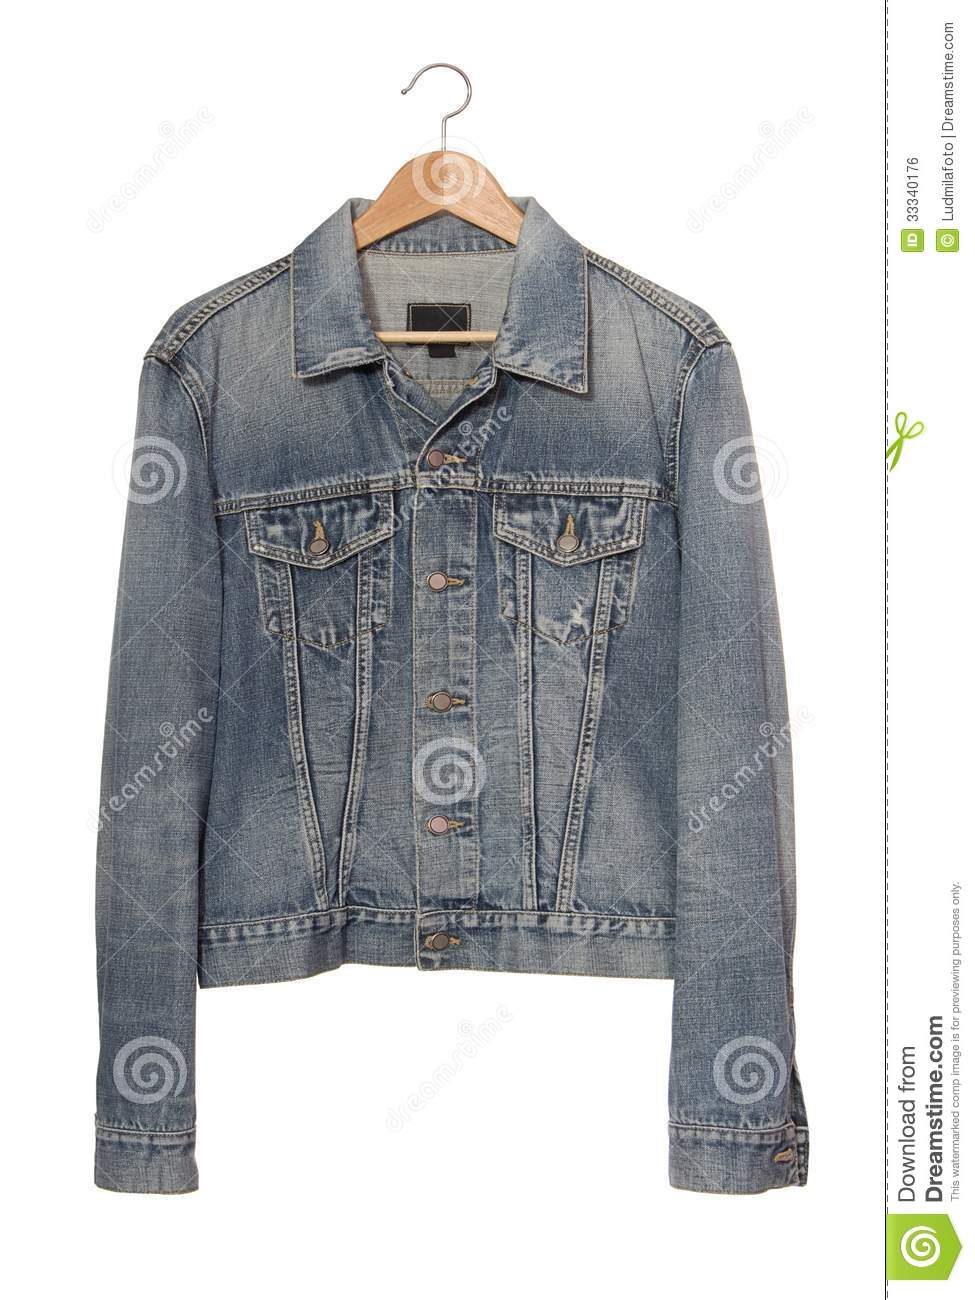 Denim Jacket On Coat Hanger Royalty Free Stock Image   Image  33340176